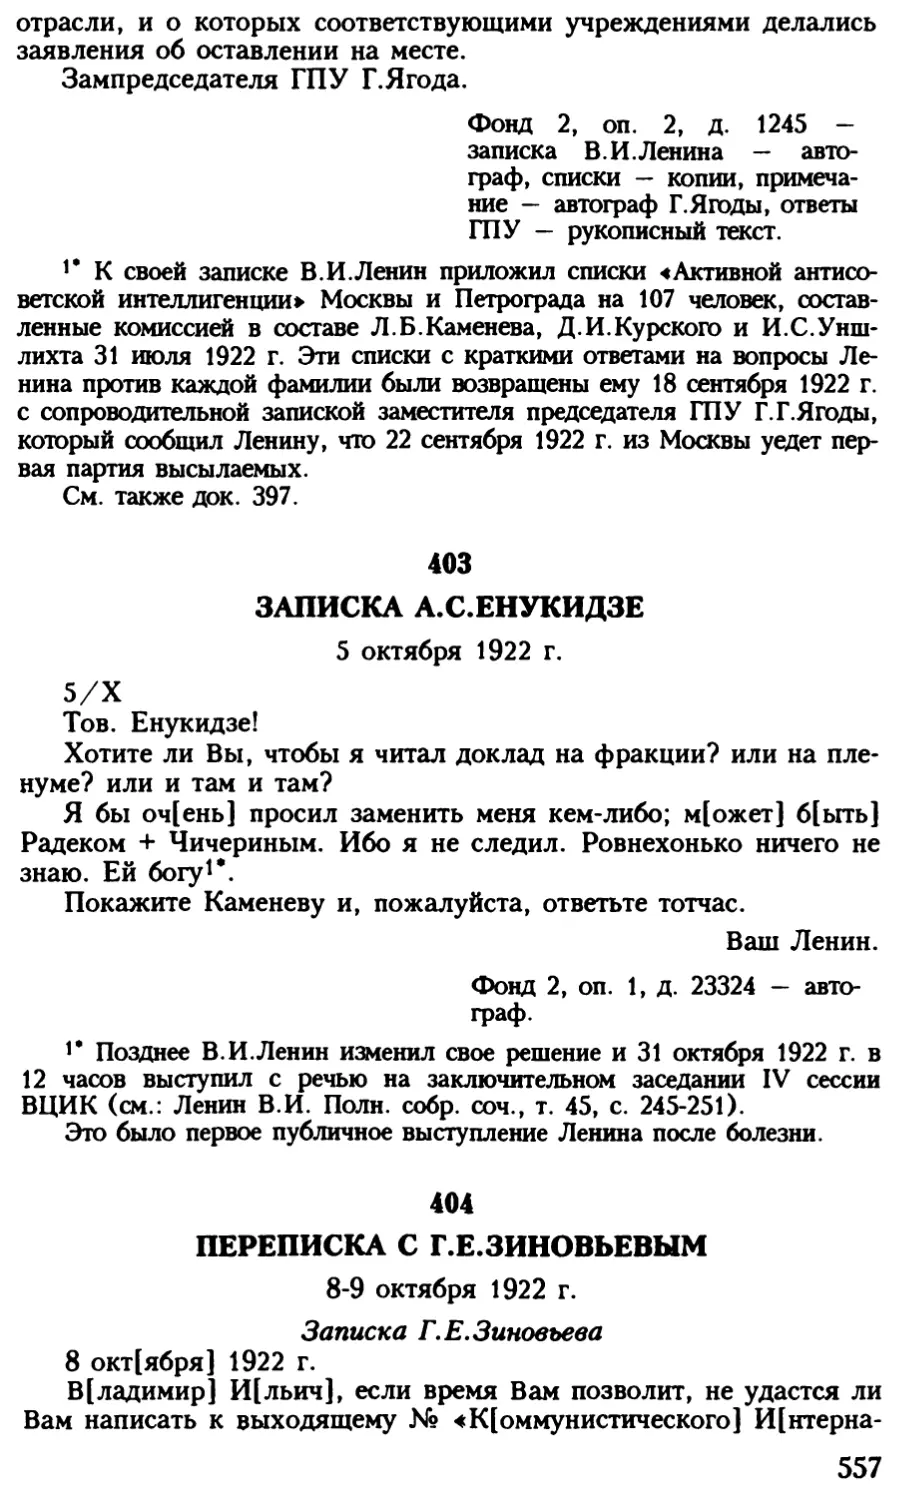 404. Переписка с Г.Е.Зиновьевым. 8—9 октября 1922 г